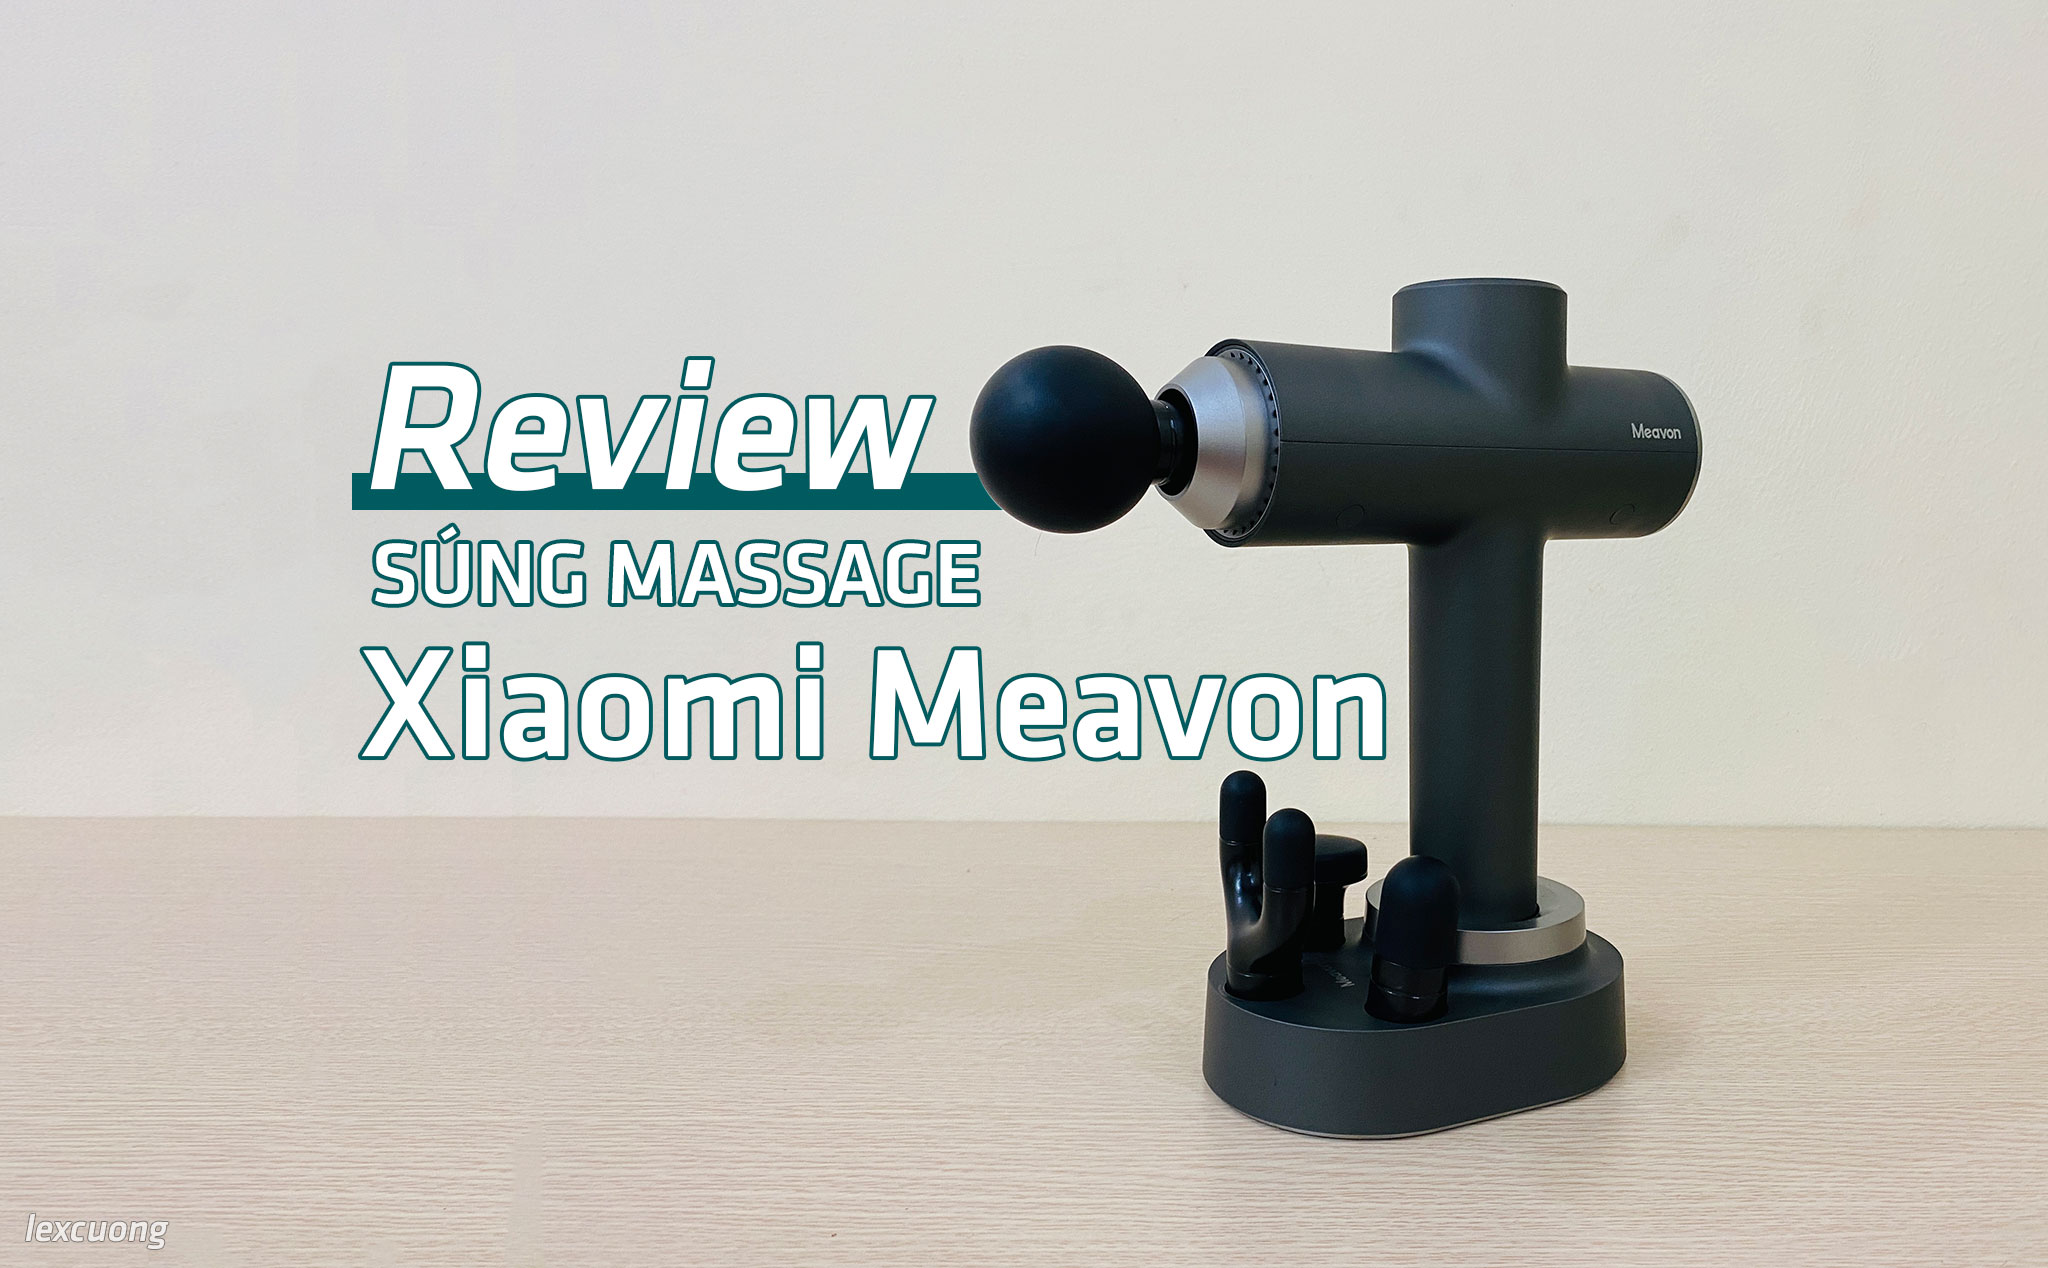 Review súng Massage Xiaomi Meavon: Đa chế độ, 4 đầu massage đáp ứng massage mọi vị trí